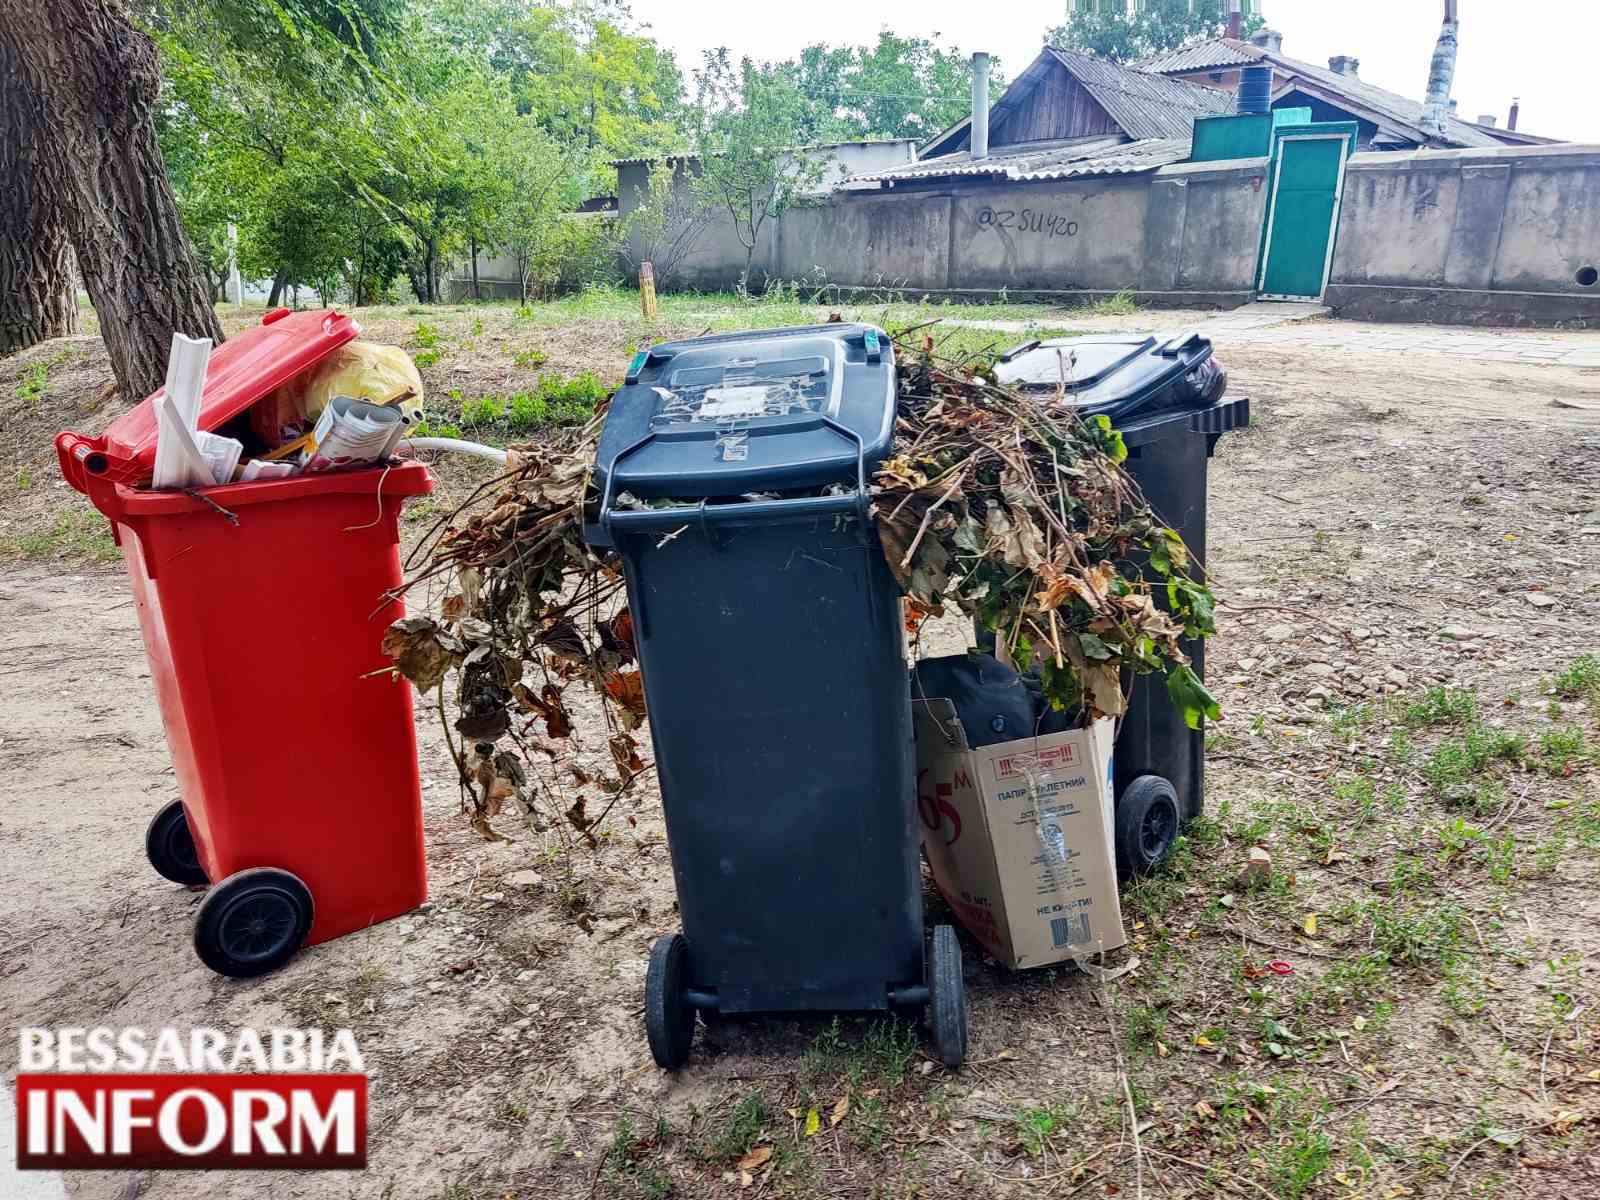 Заради справедливості: у Болградській громаді знайшли ще один спосіб боротьби з тими, хто ухиляється від плати за сміття